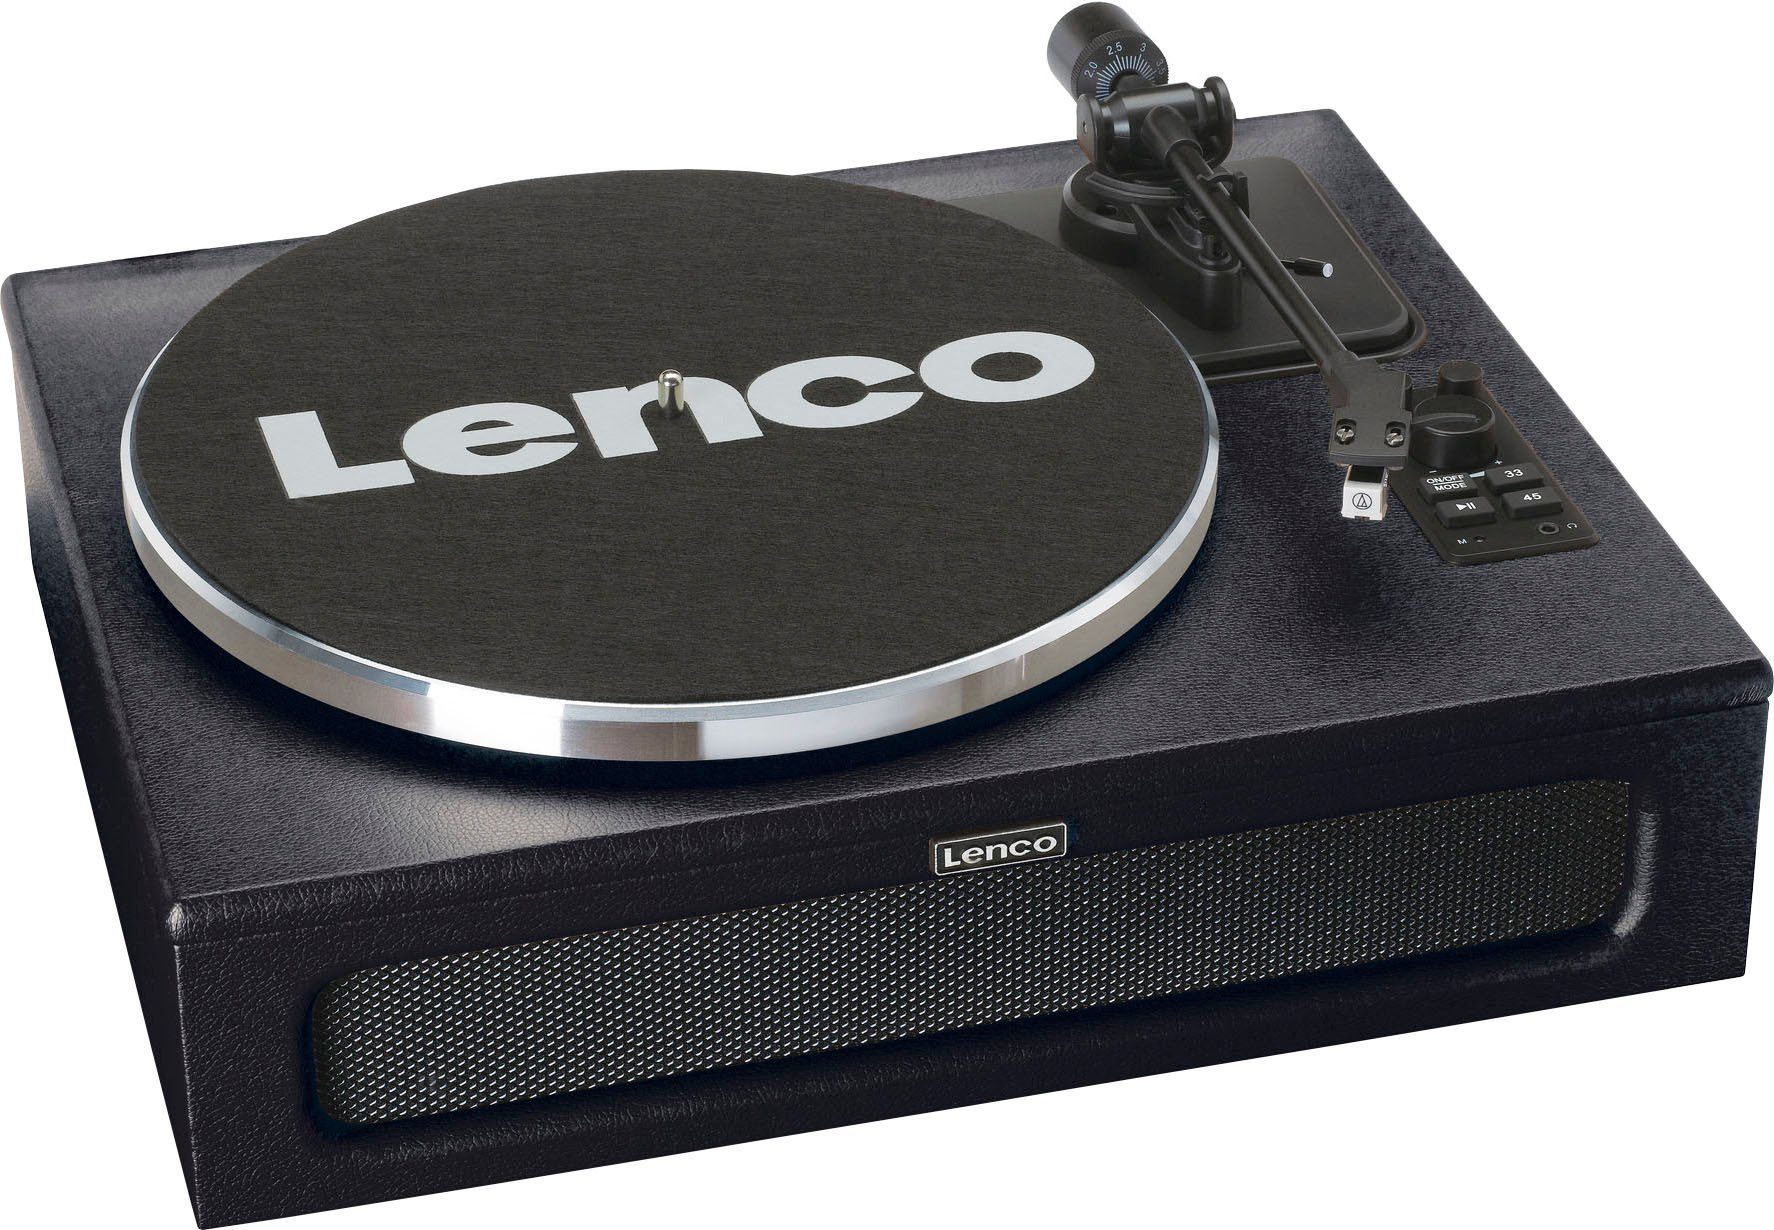 LS-430 Plattenspieler Lenco (Riemenantrieb) Lautsprechern 4 Plattenspieler schwarz mit